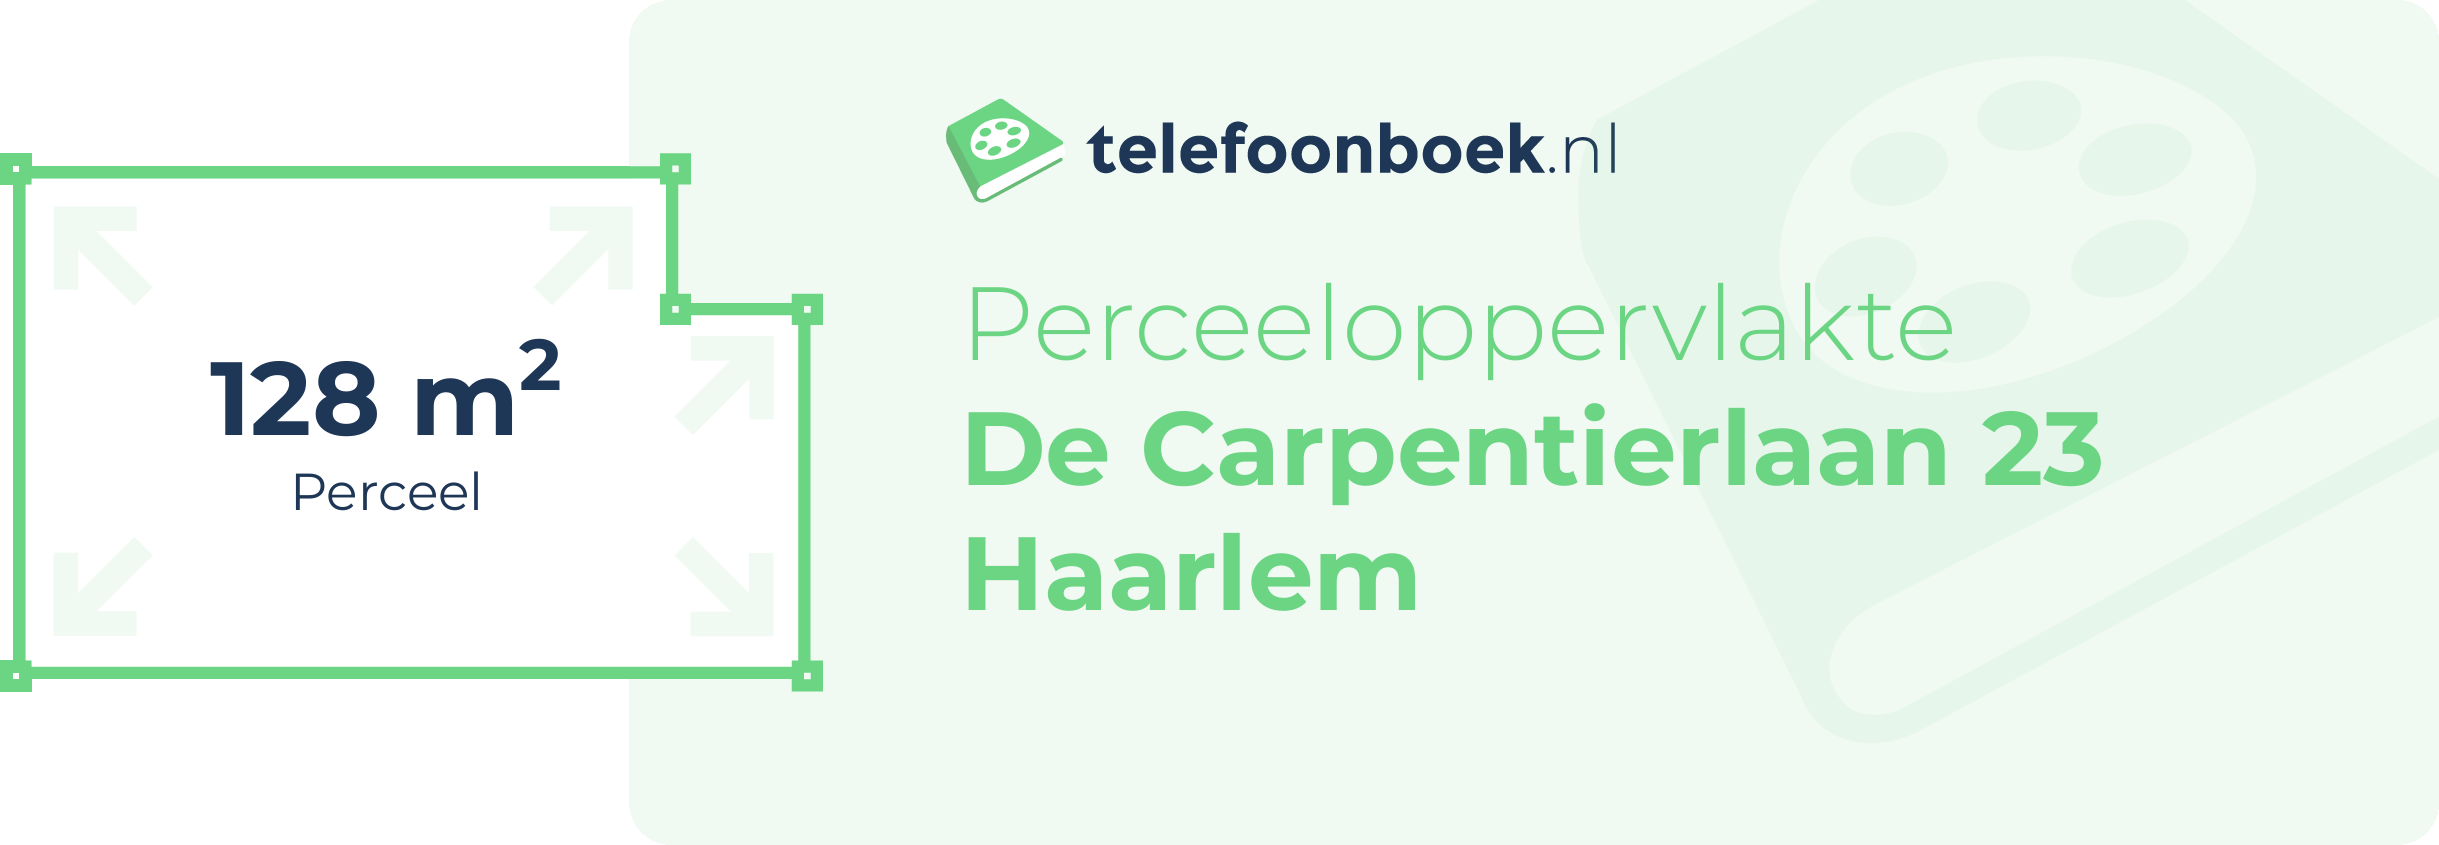 Perceeloppervlakte De Carpentierlaan 23 Haarlem